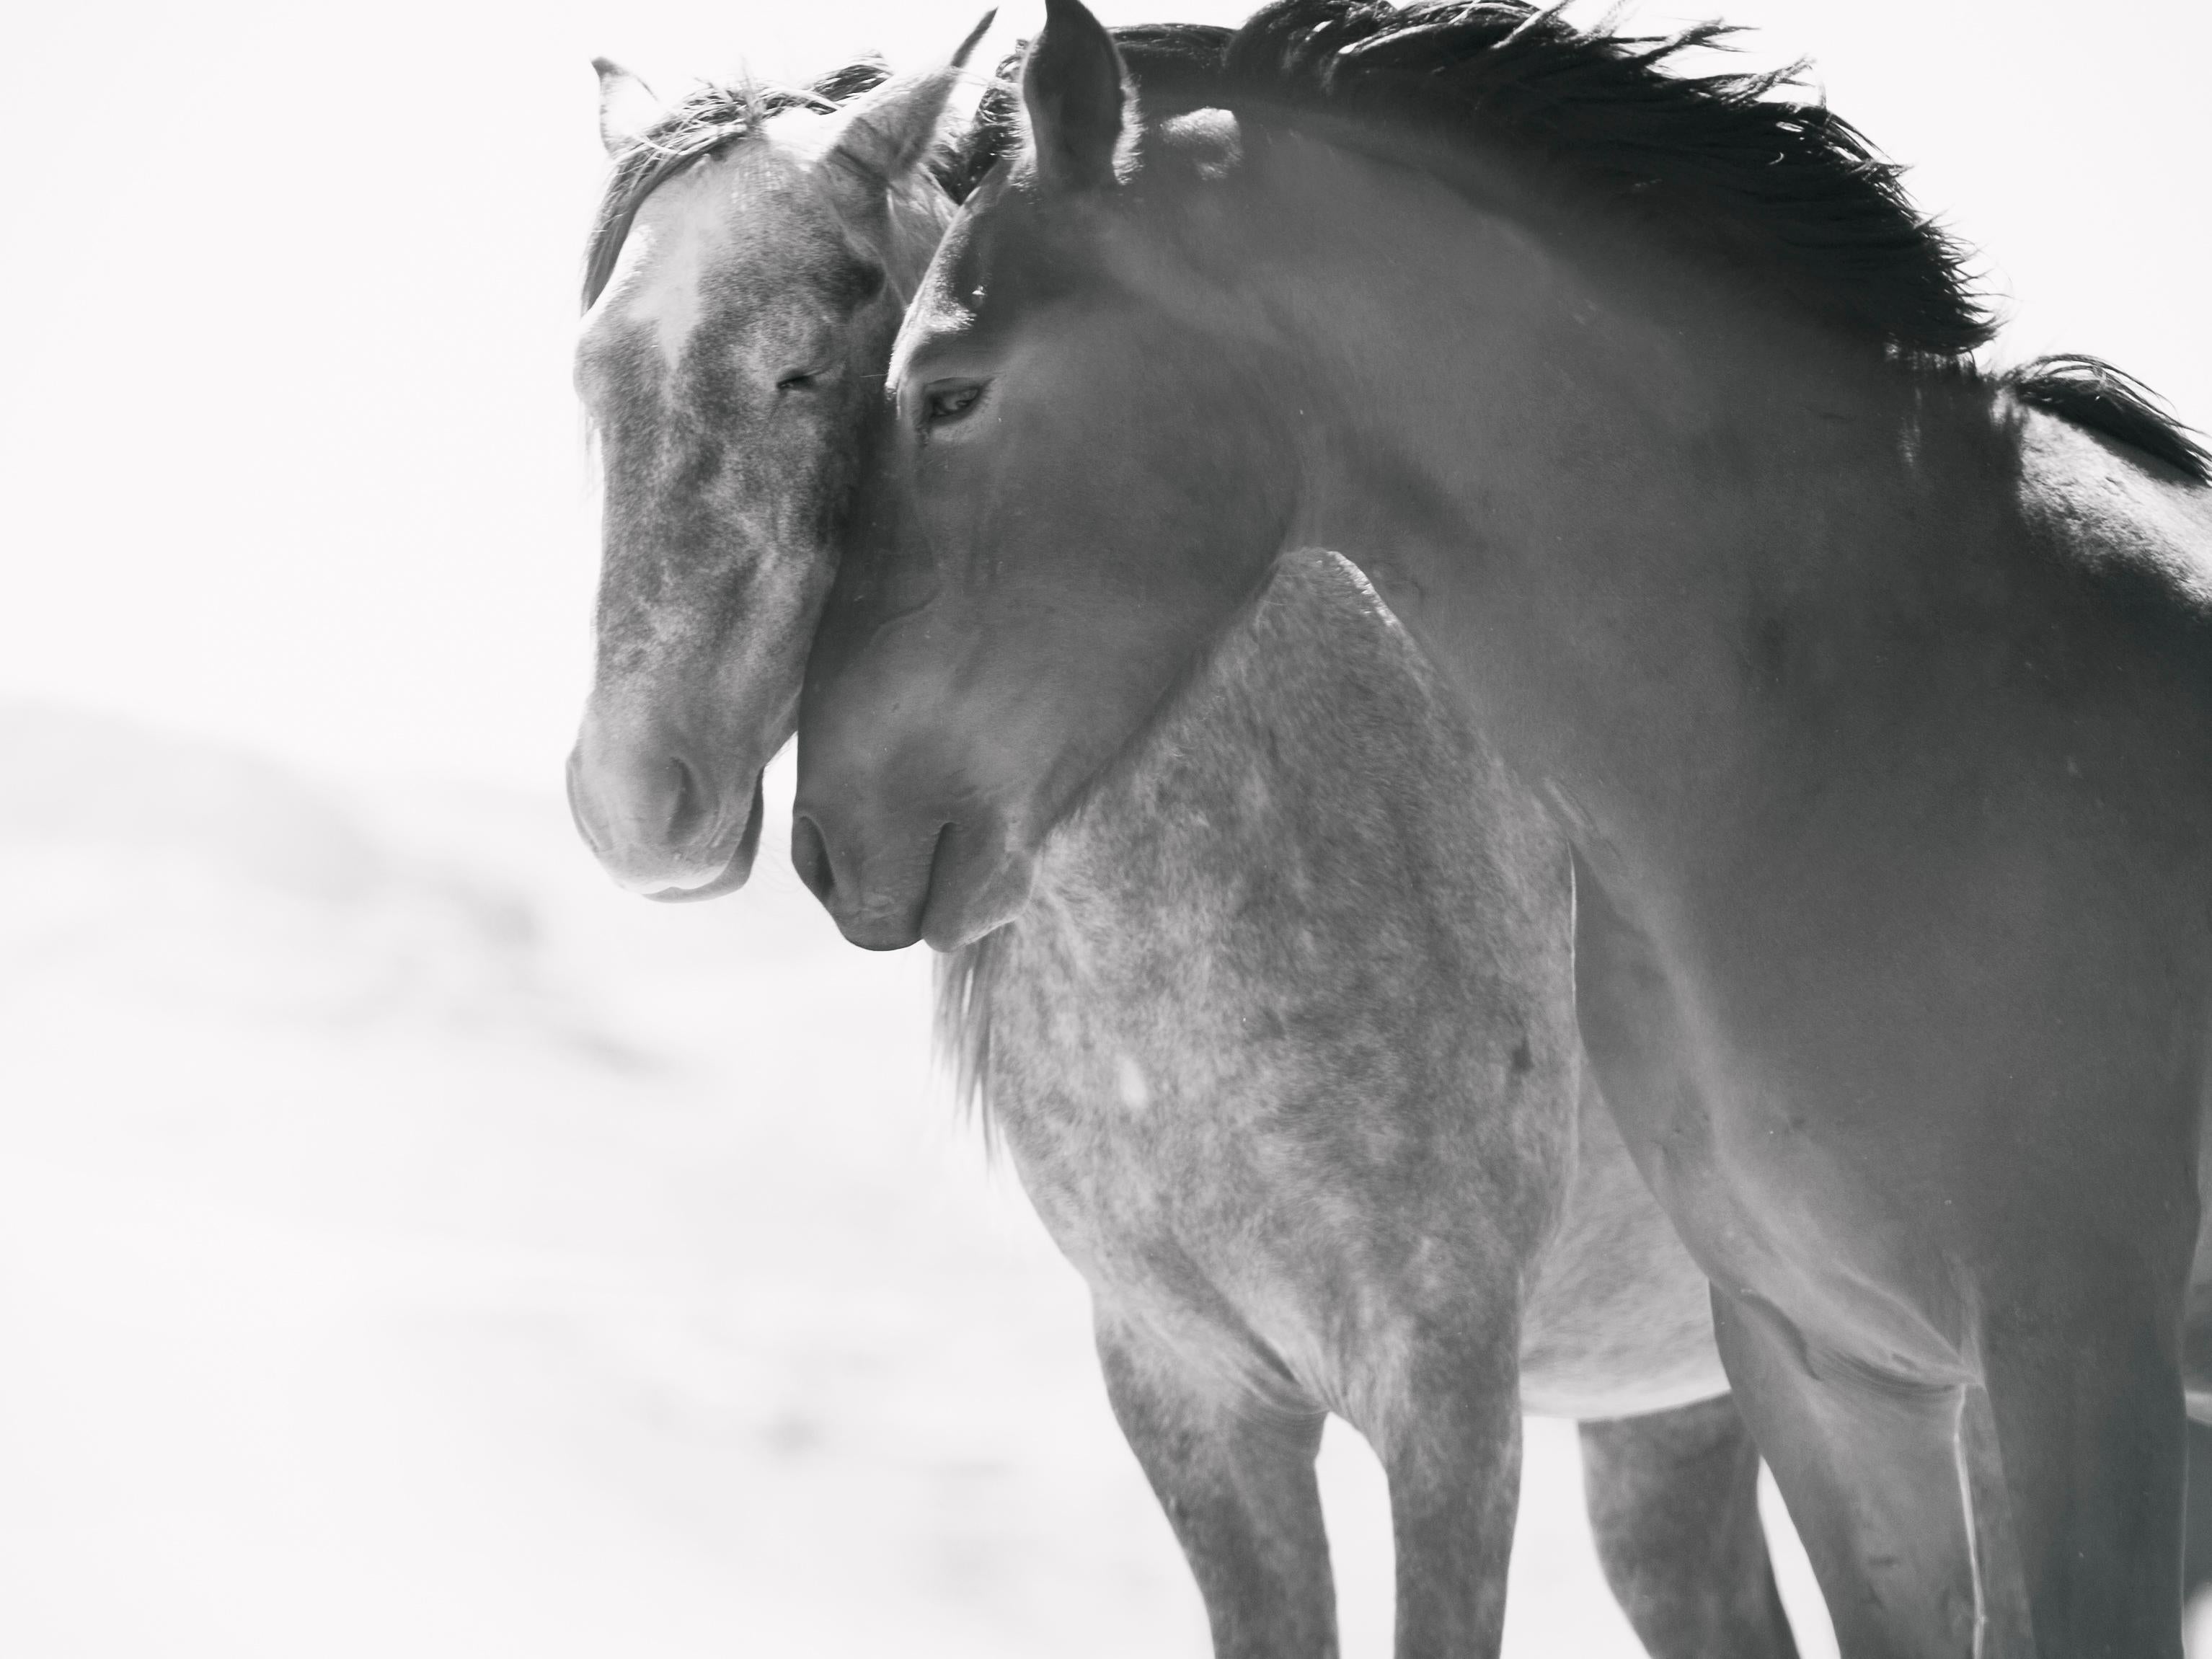 Black and White Photograph Shane Russeck - Les âmes sœurs 60x90  Photographie en noir et blanc de chevaux sauvages Mustangs Photographie 